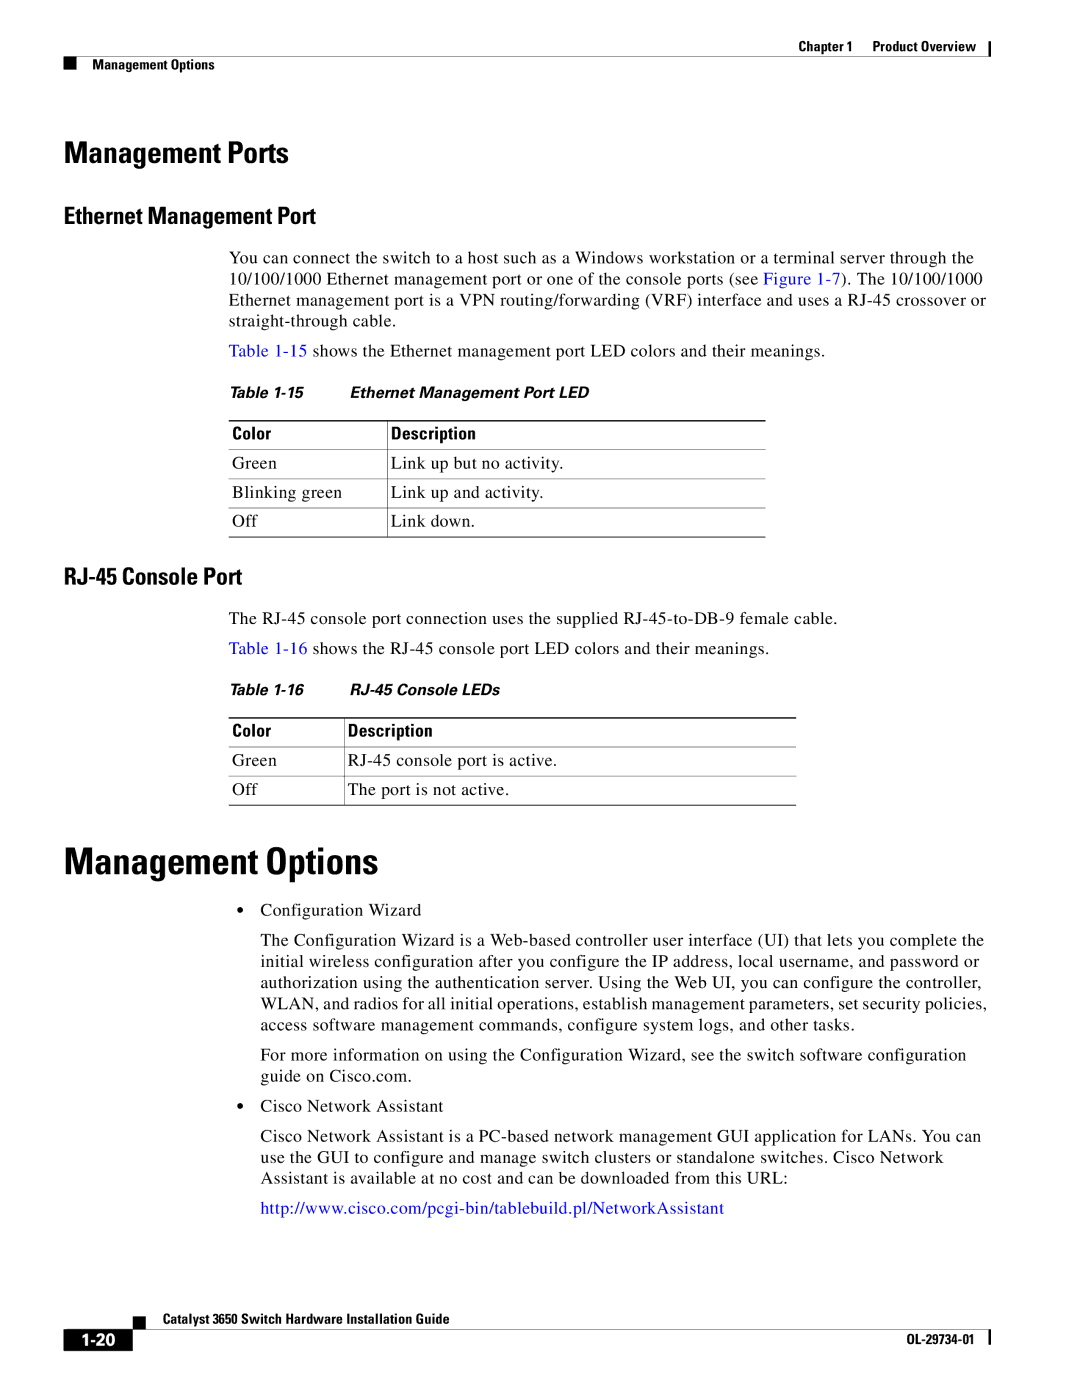 Cisco Systems 3650 manual Management Options, Ethernet Management Port, RJ-45 Console Port 